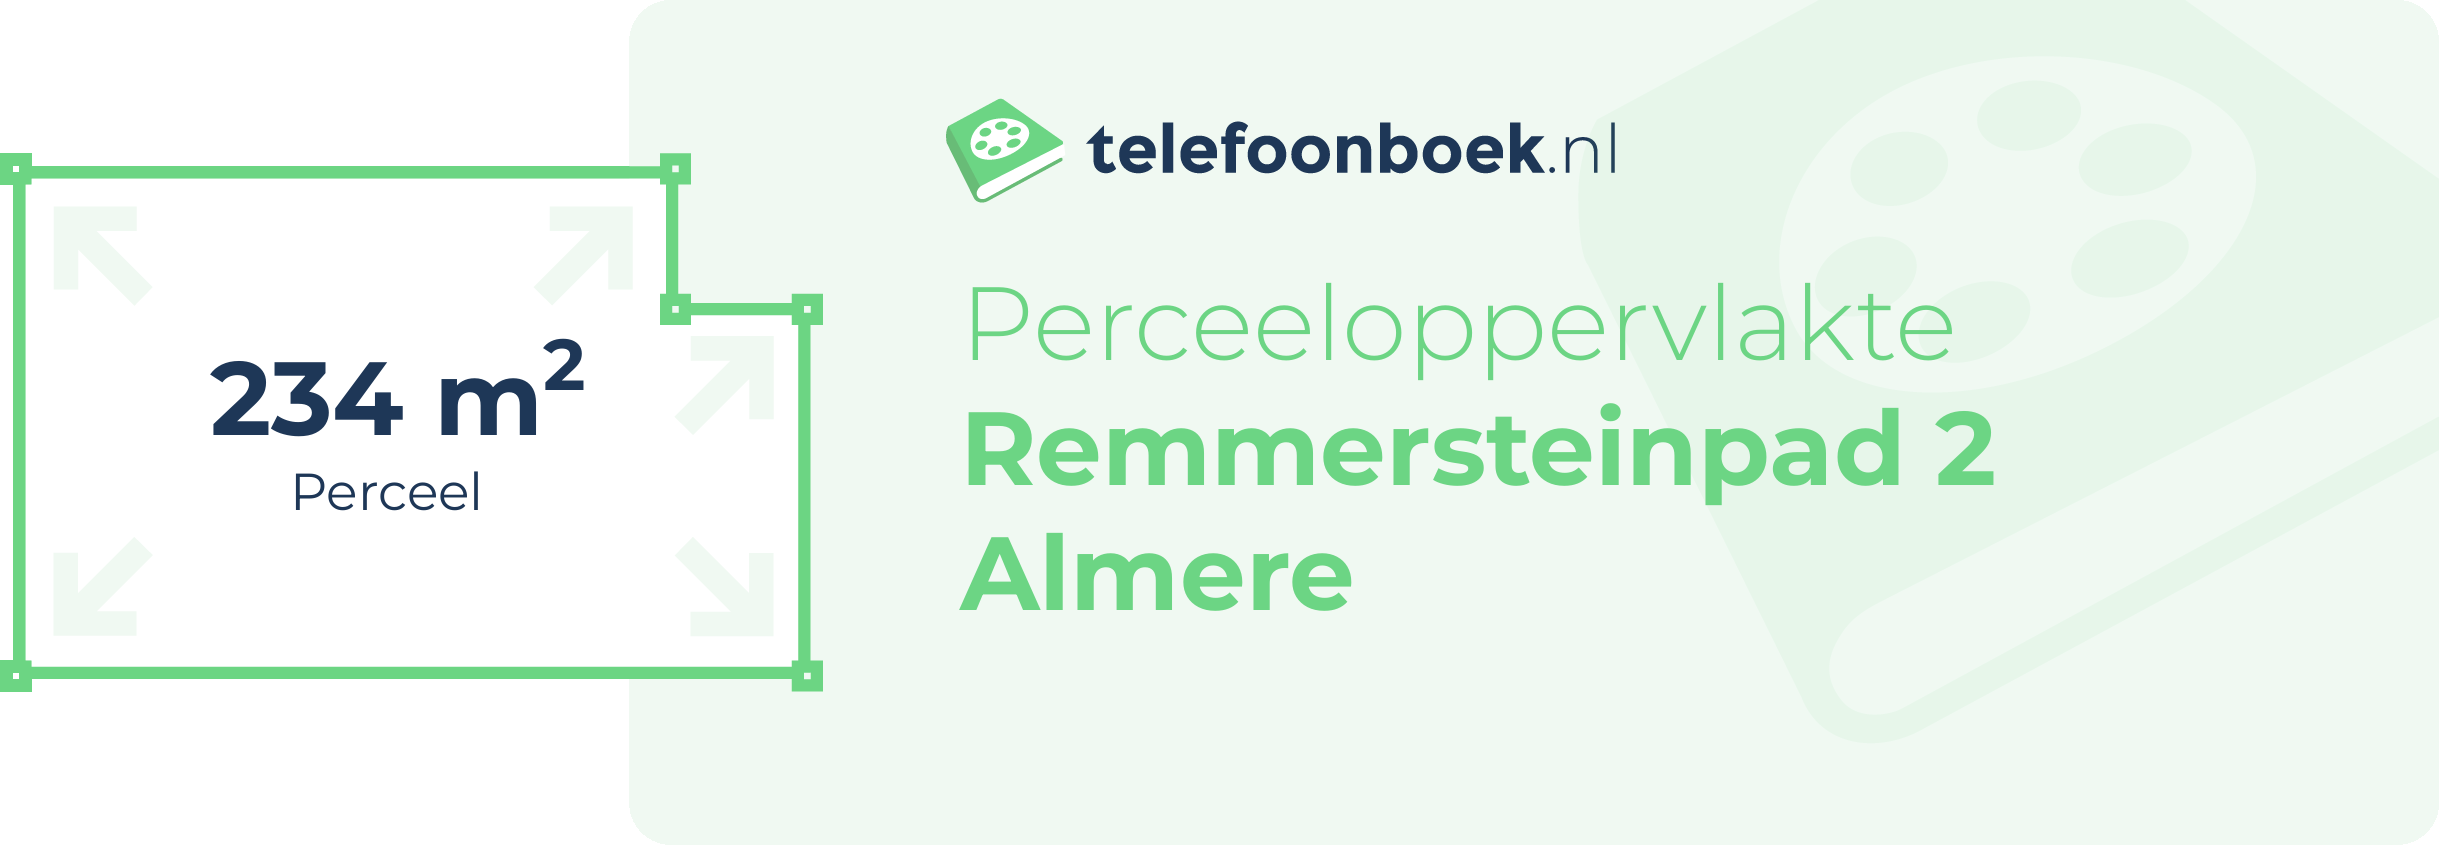 Perceeloppervlakte Remmersteinpad 2 Almere